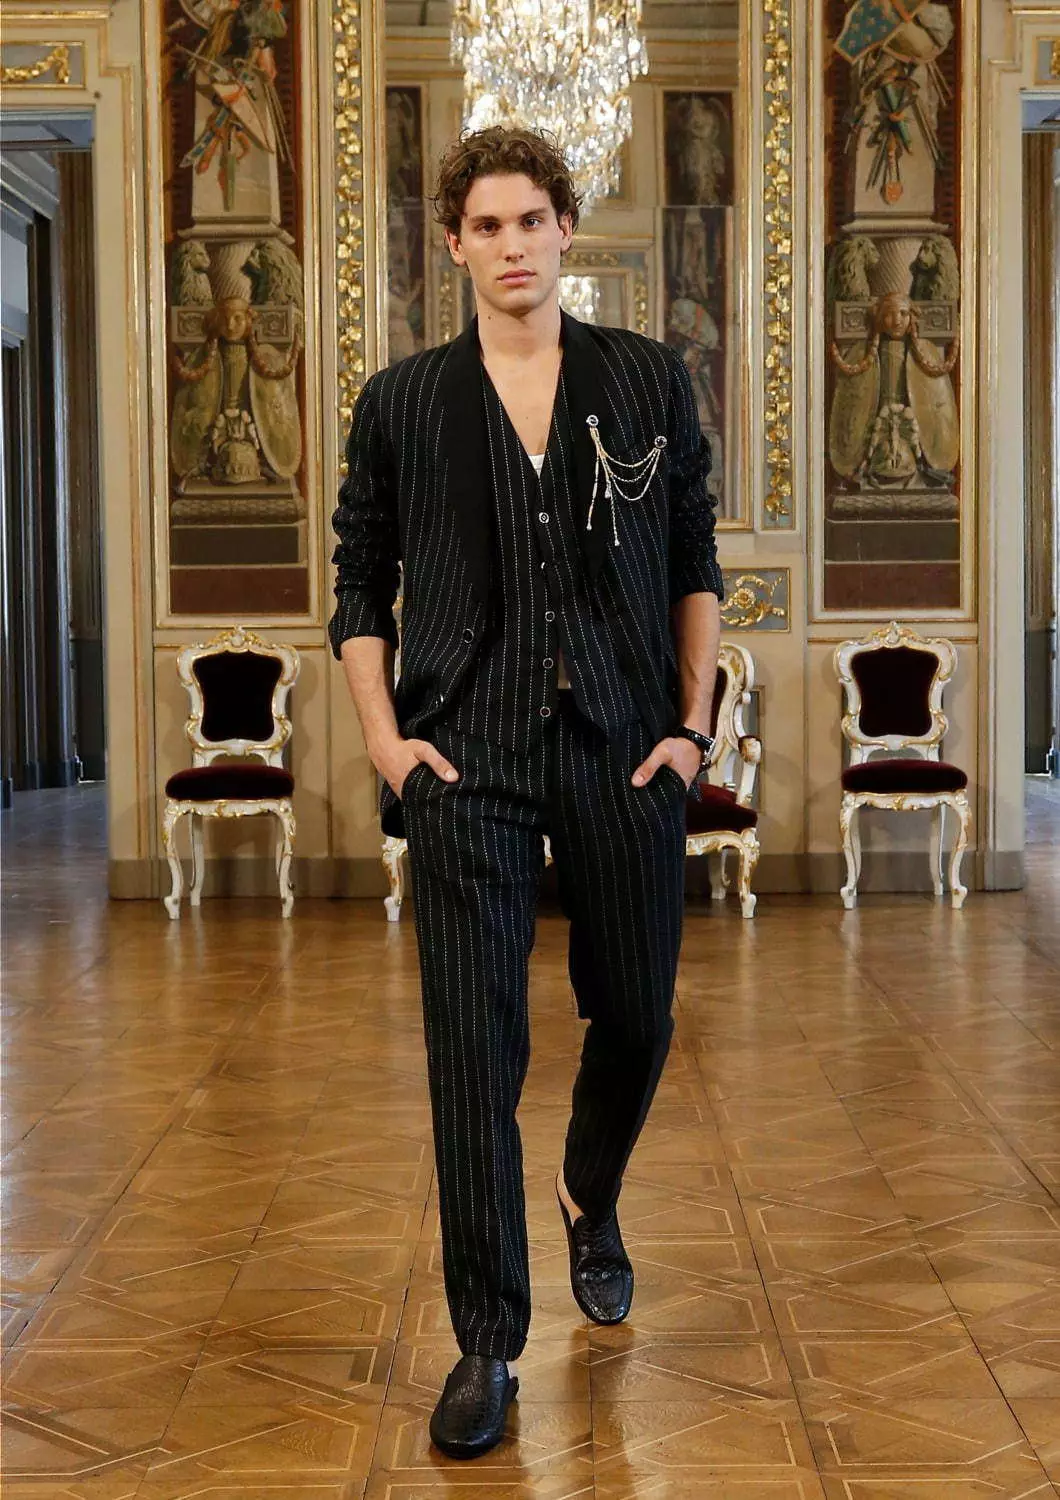 Dolce & Gabbana Alta Sartoria Menswear Collection Julayi 2020 53602_53